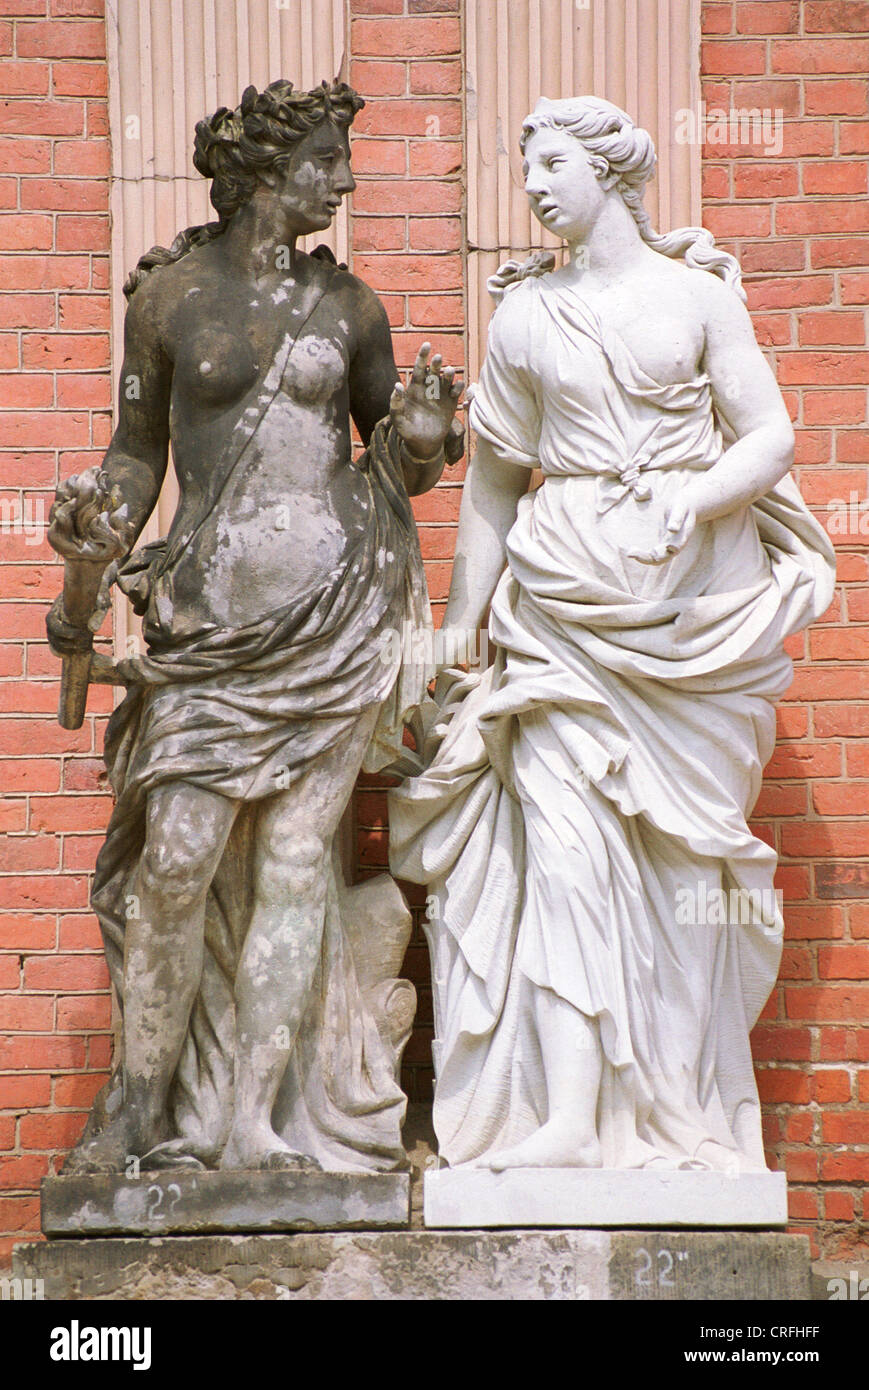 Potsdam, in Germania, una statua restaurata sorge accanto ad una statua antica Foto Stock